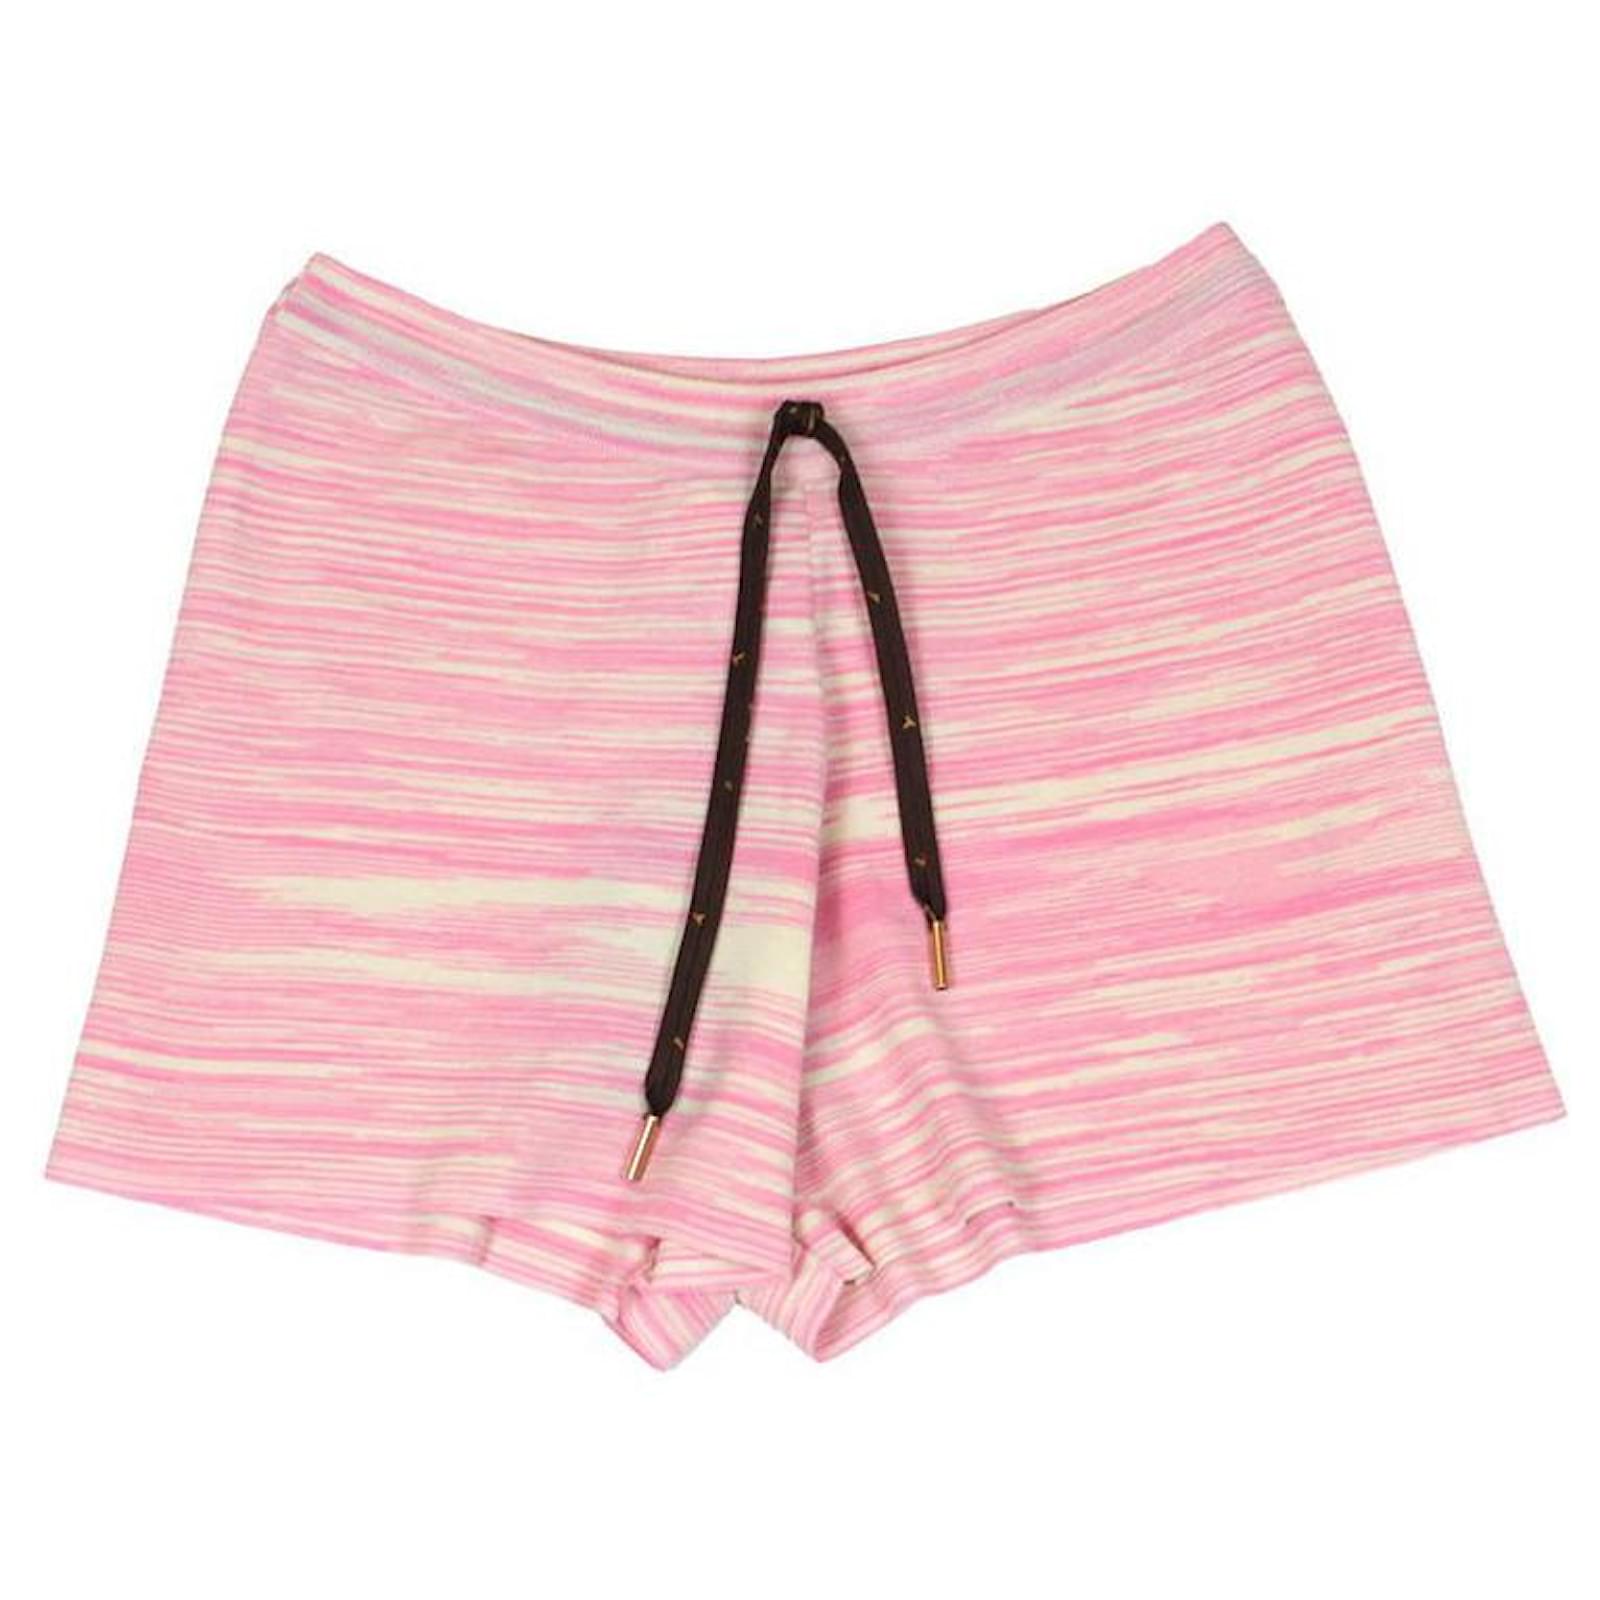 pink lv shorts